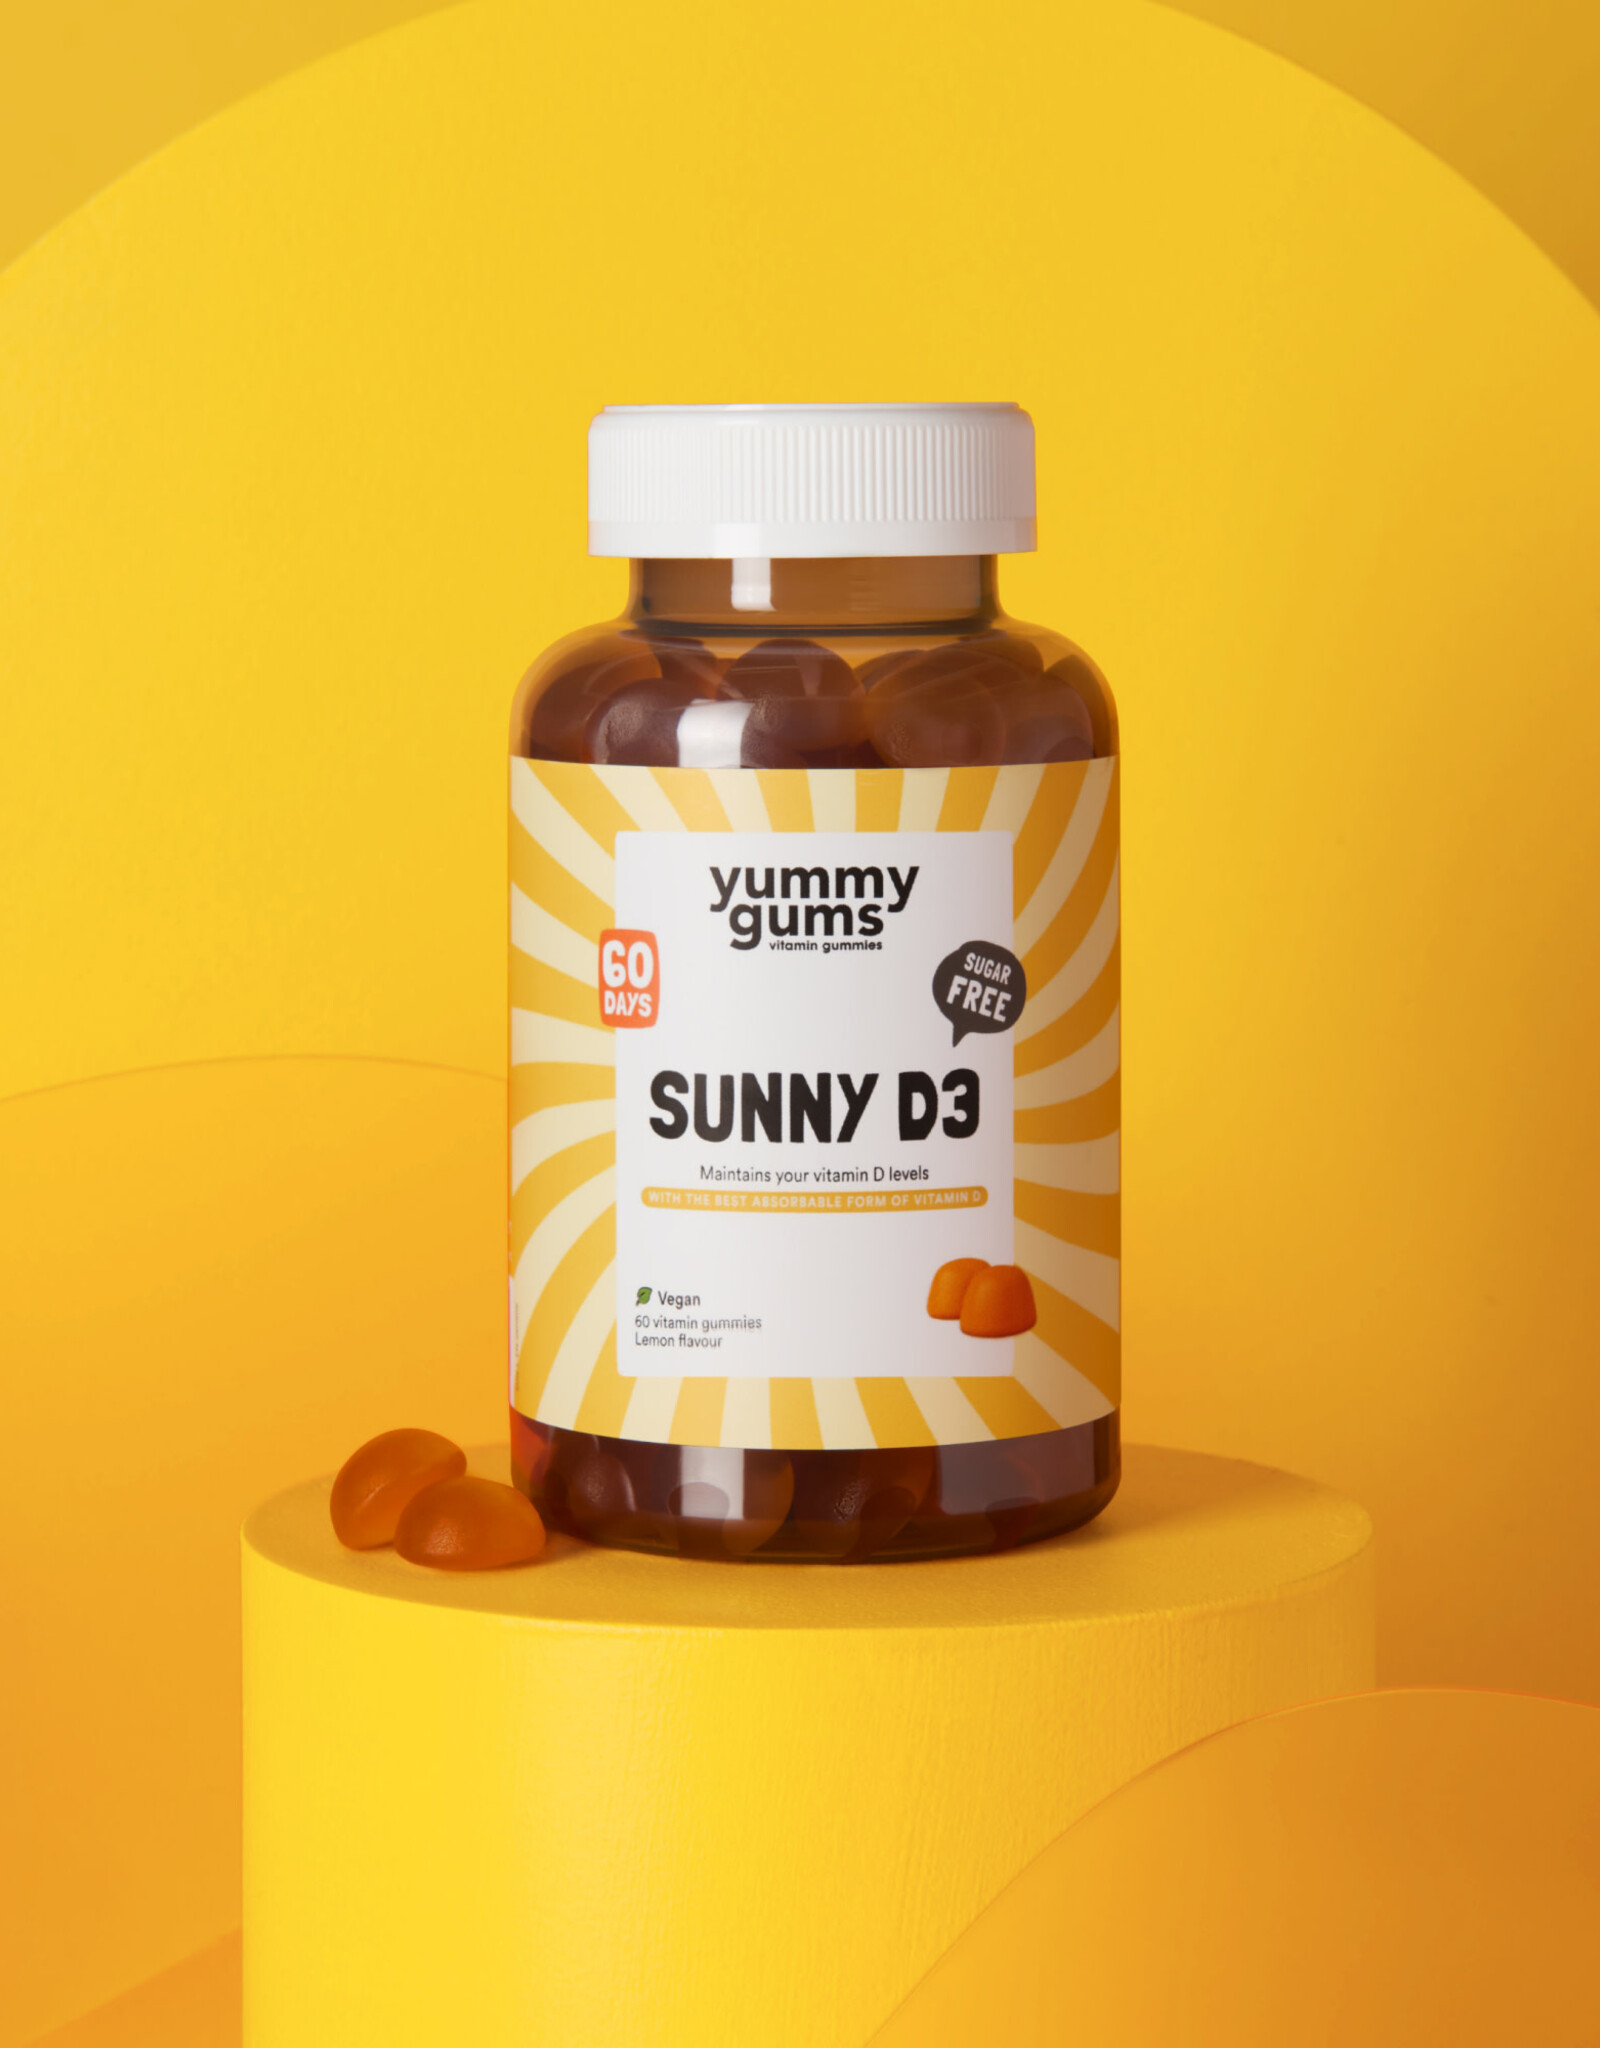 yummygums SUNNY D3 GUMMIES - 60 vitamine gummies 180g